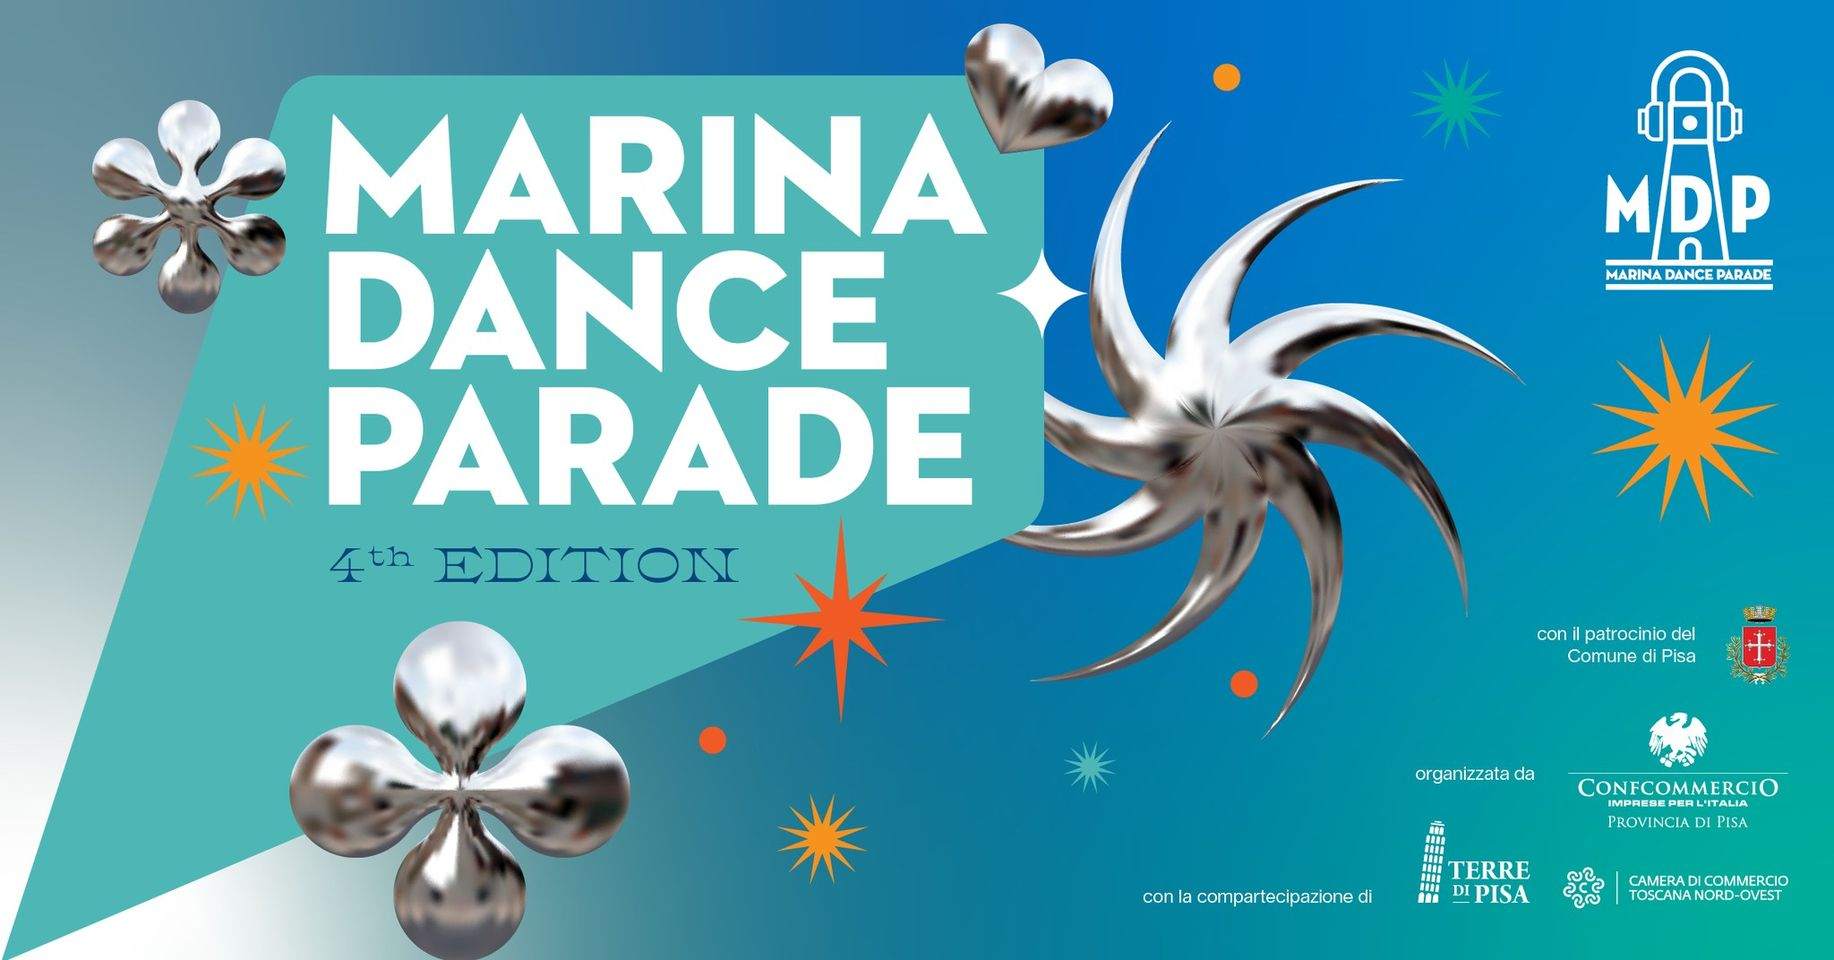 Marina Dance Parade - フライヤー表